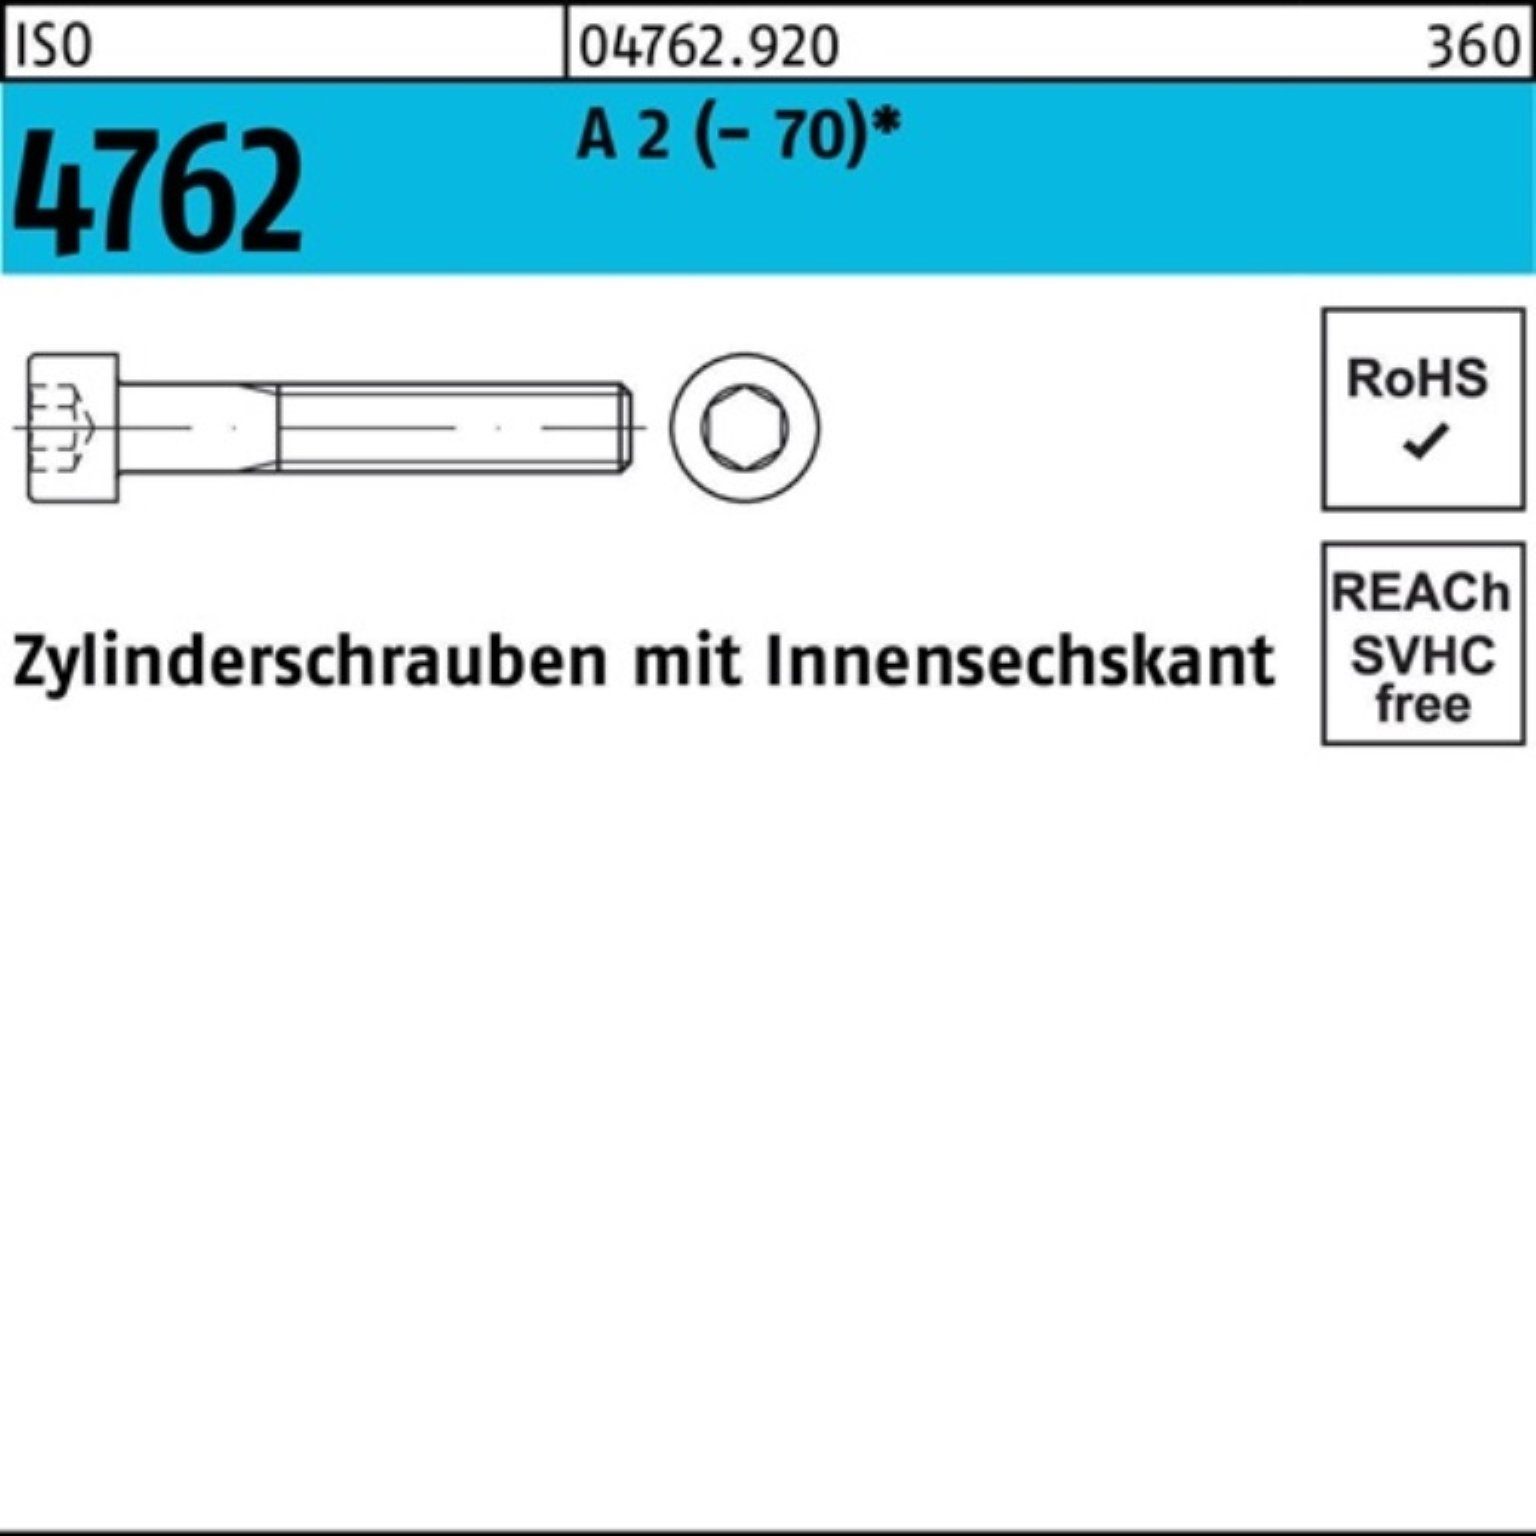 A Pack 4762 ISO 100 (70) 16 2 Zylinderschraube 100er S Zylinderschraube M8x Reyher Innen-6kt